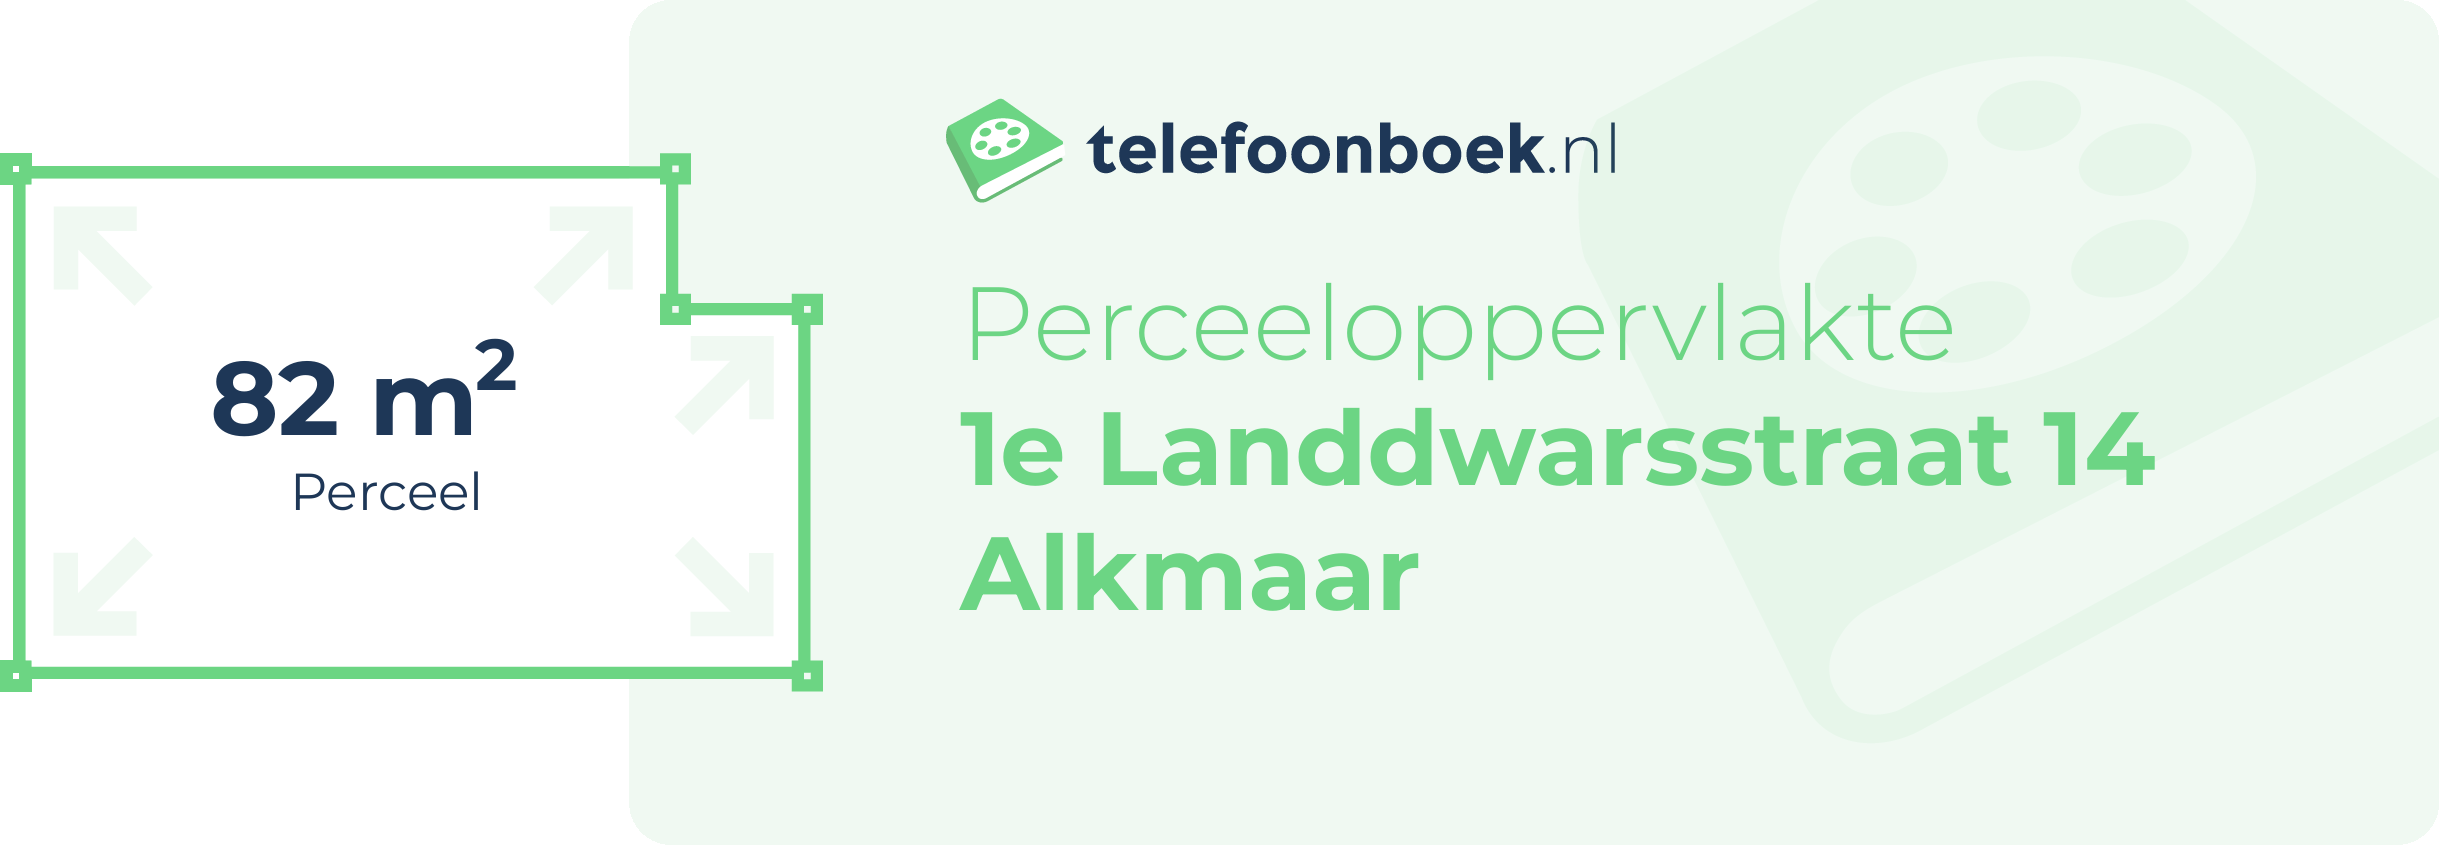 Perceeloppervlakte 1e Landdwarsstraat 14 Alkmaar